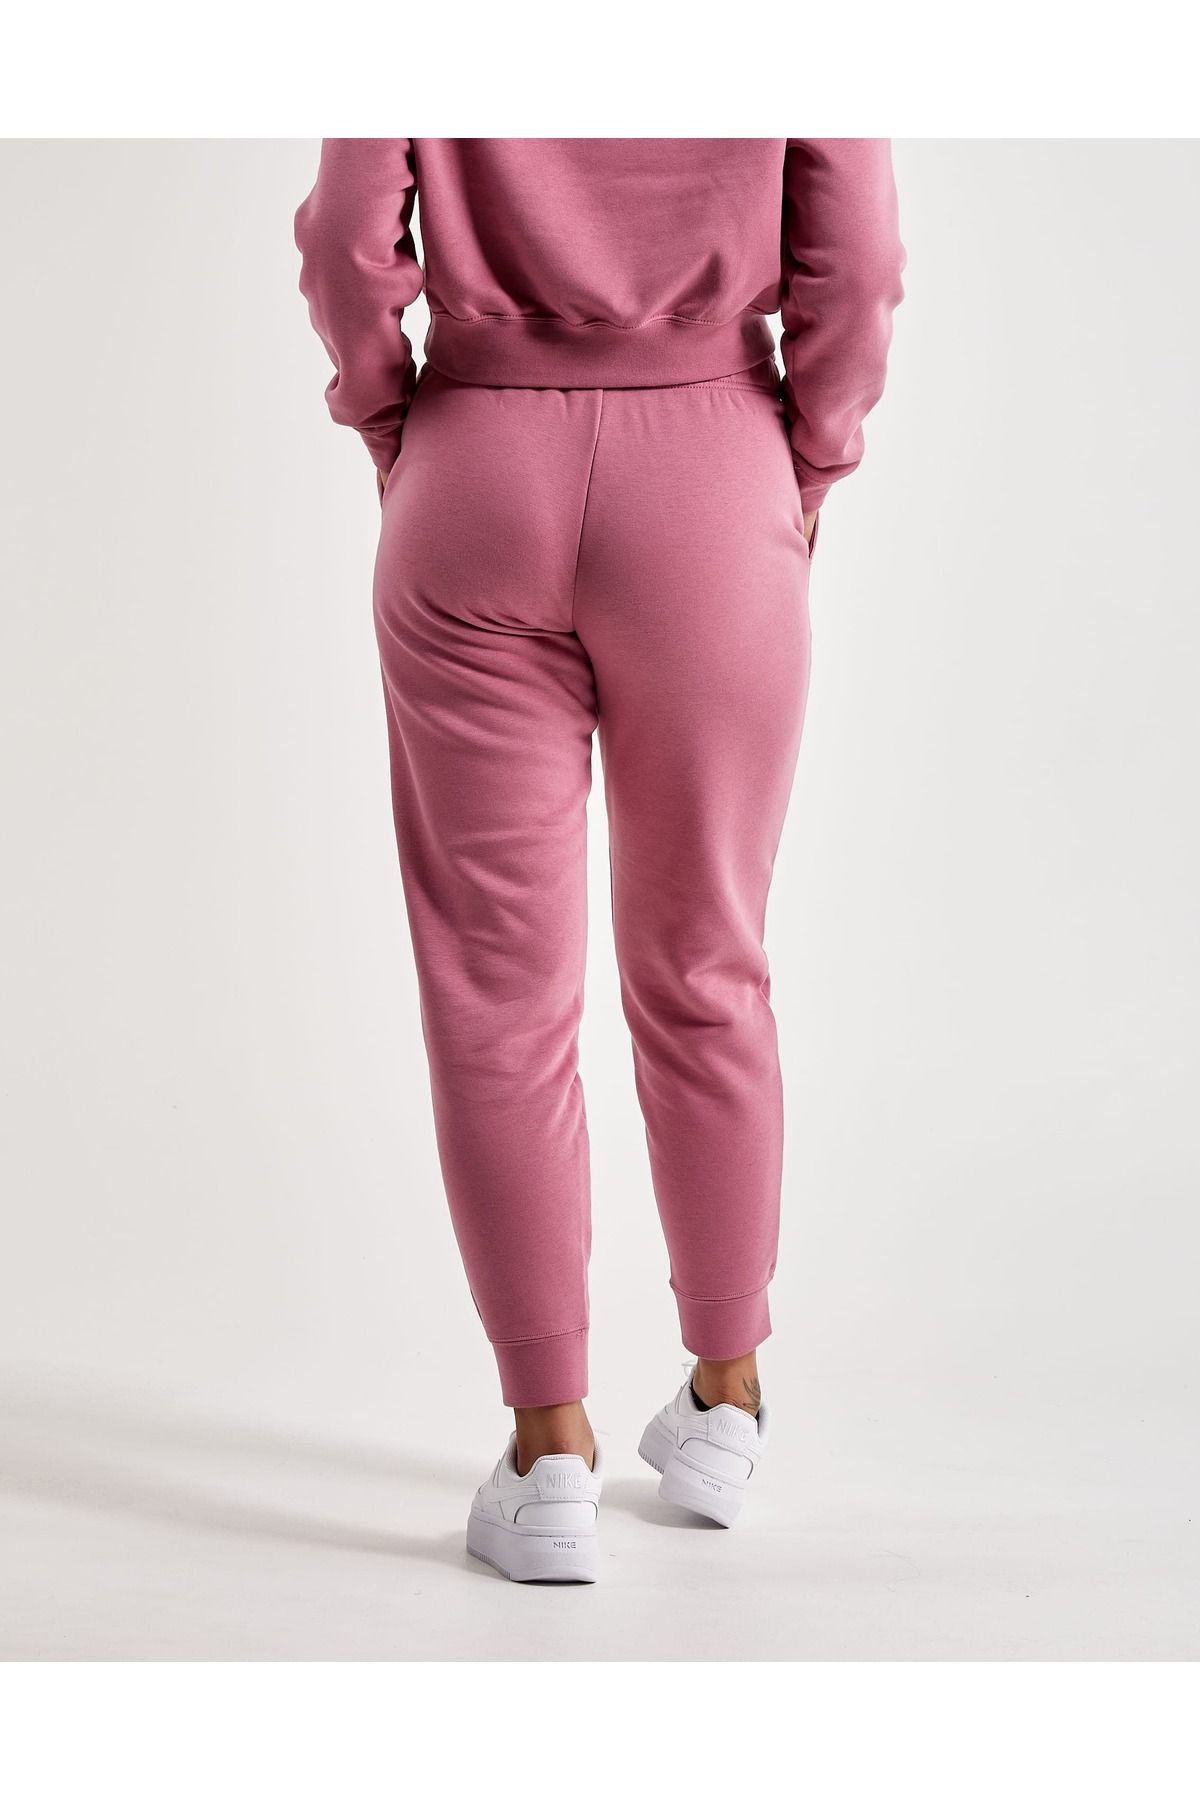 Nike Sportswear Stardust Fleece Women's Pink Sweatpants - Trendyol